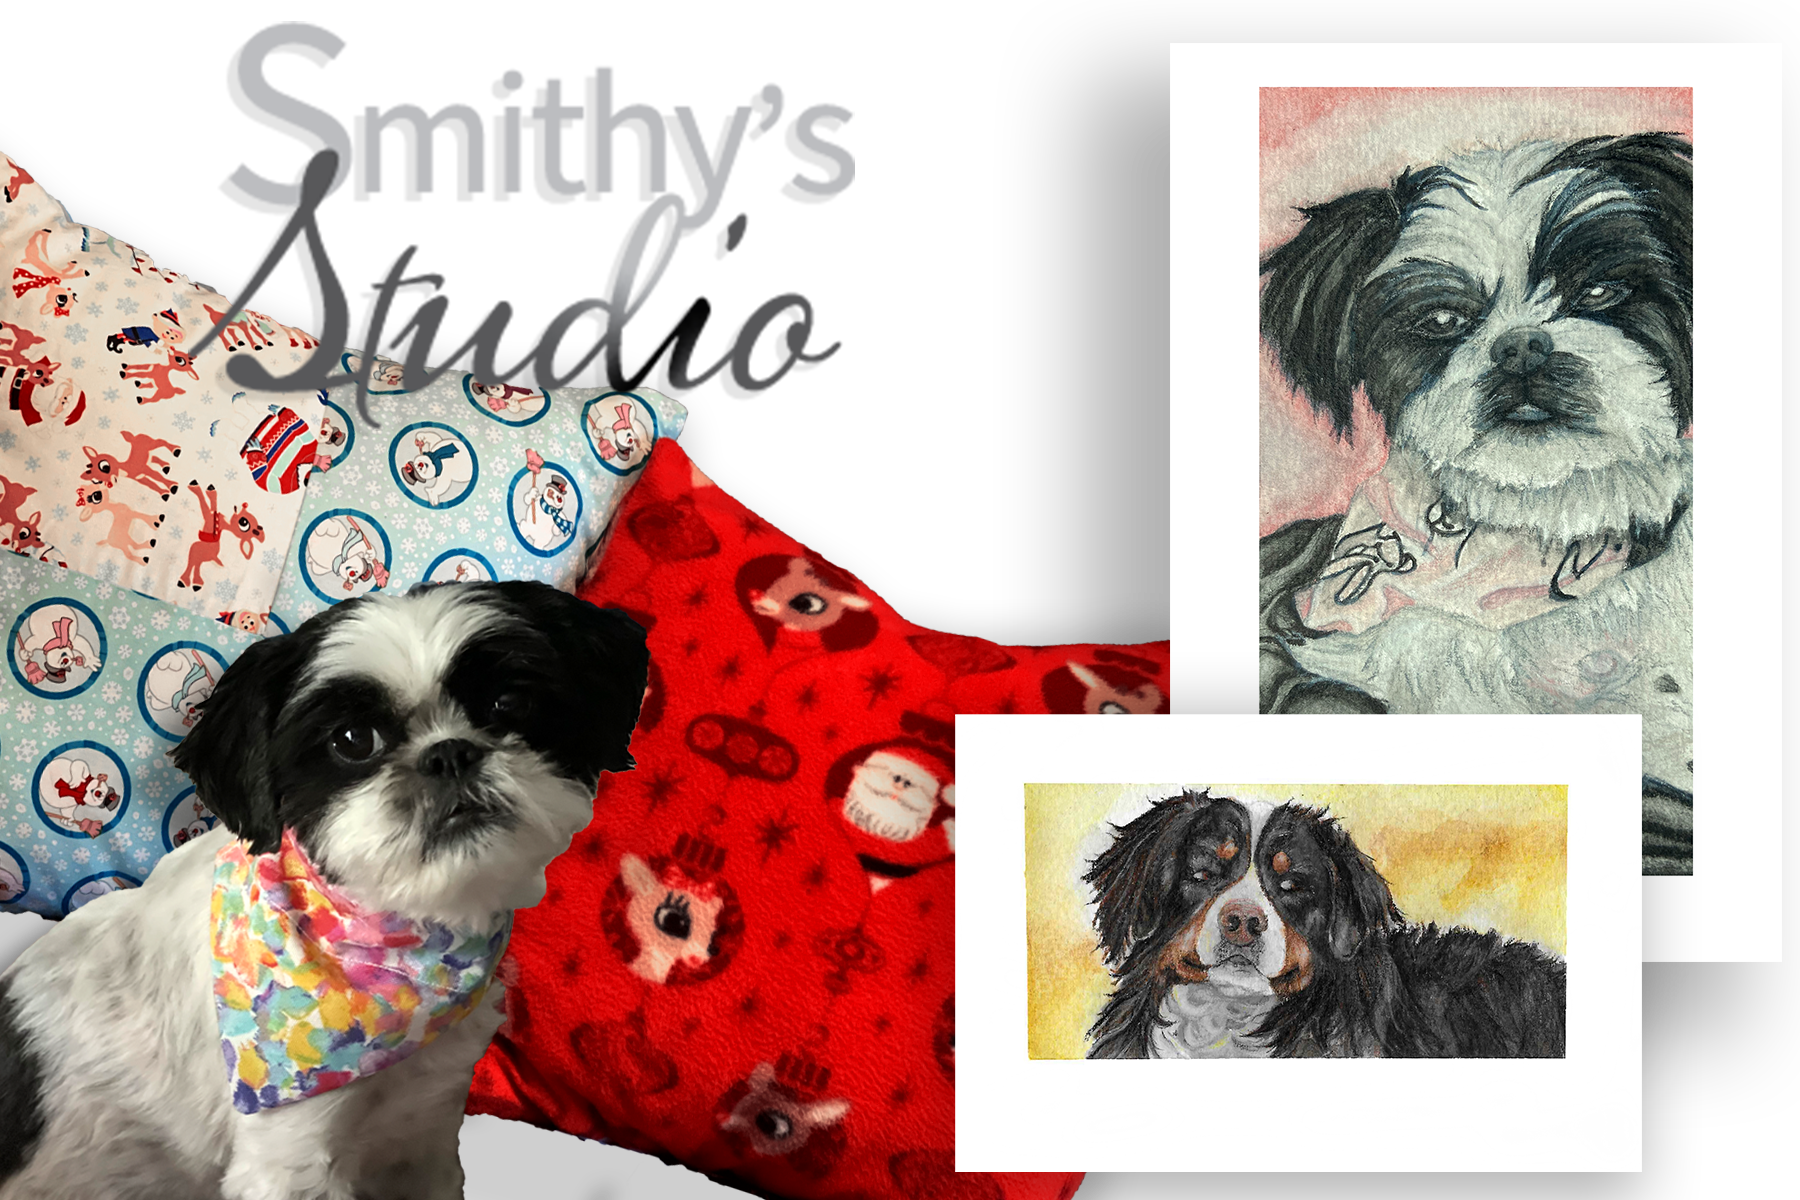 Smithy's Studio